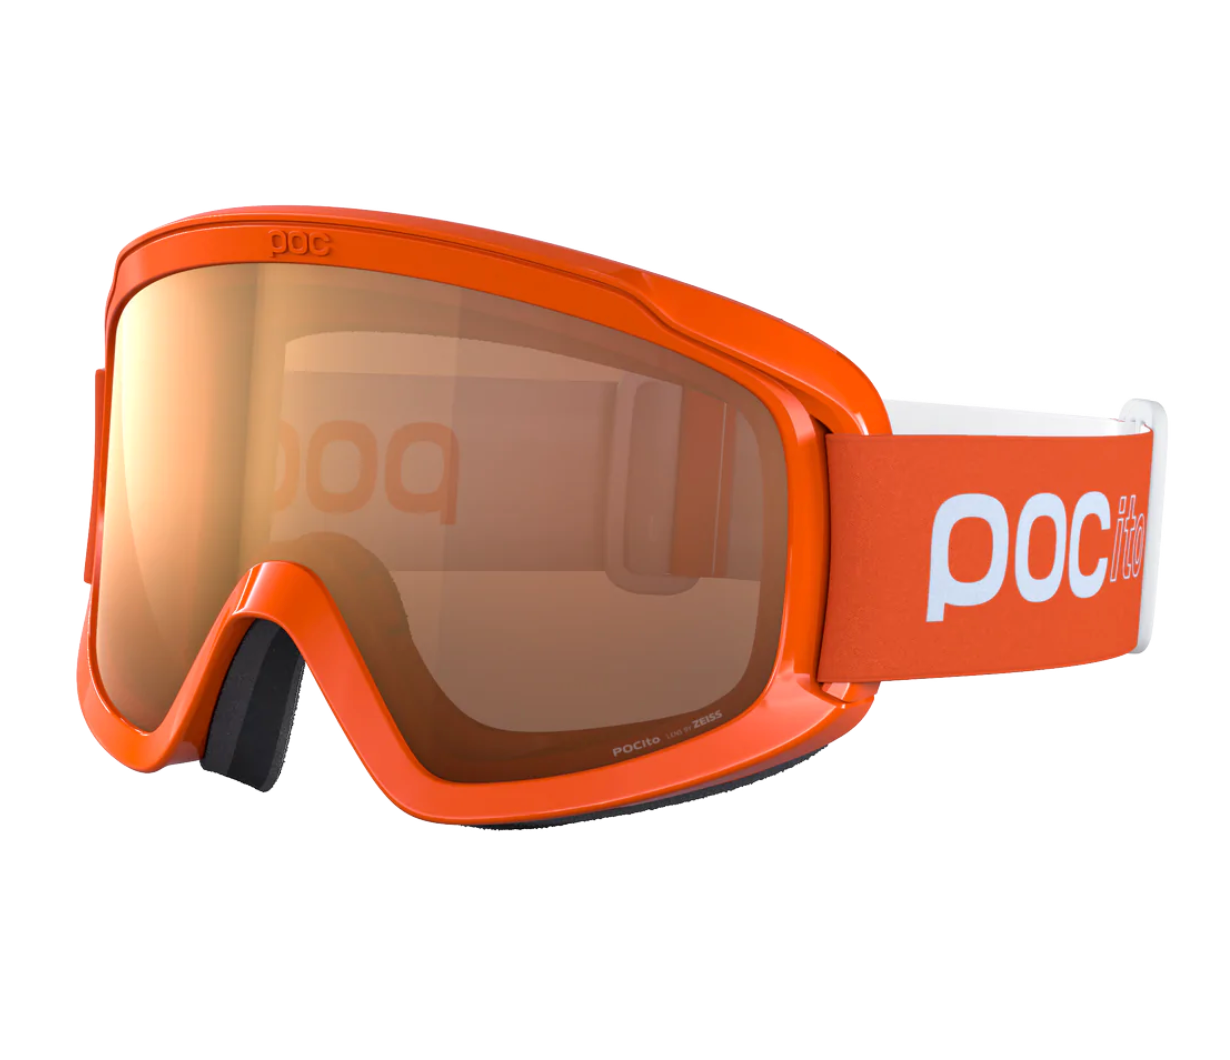 POC Pocito Opsin Goggles - Quick Orange